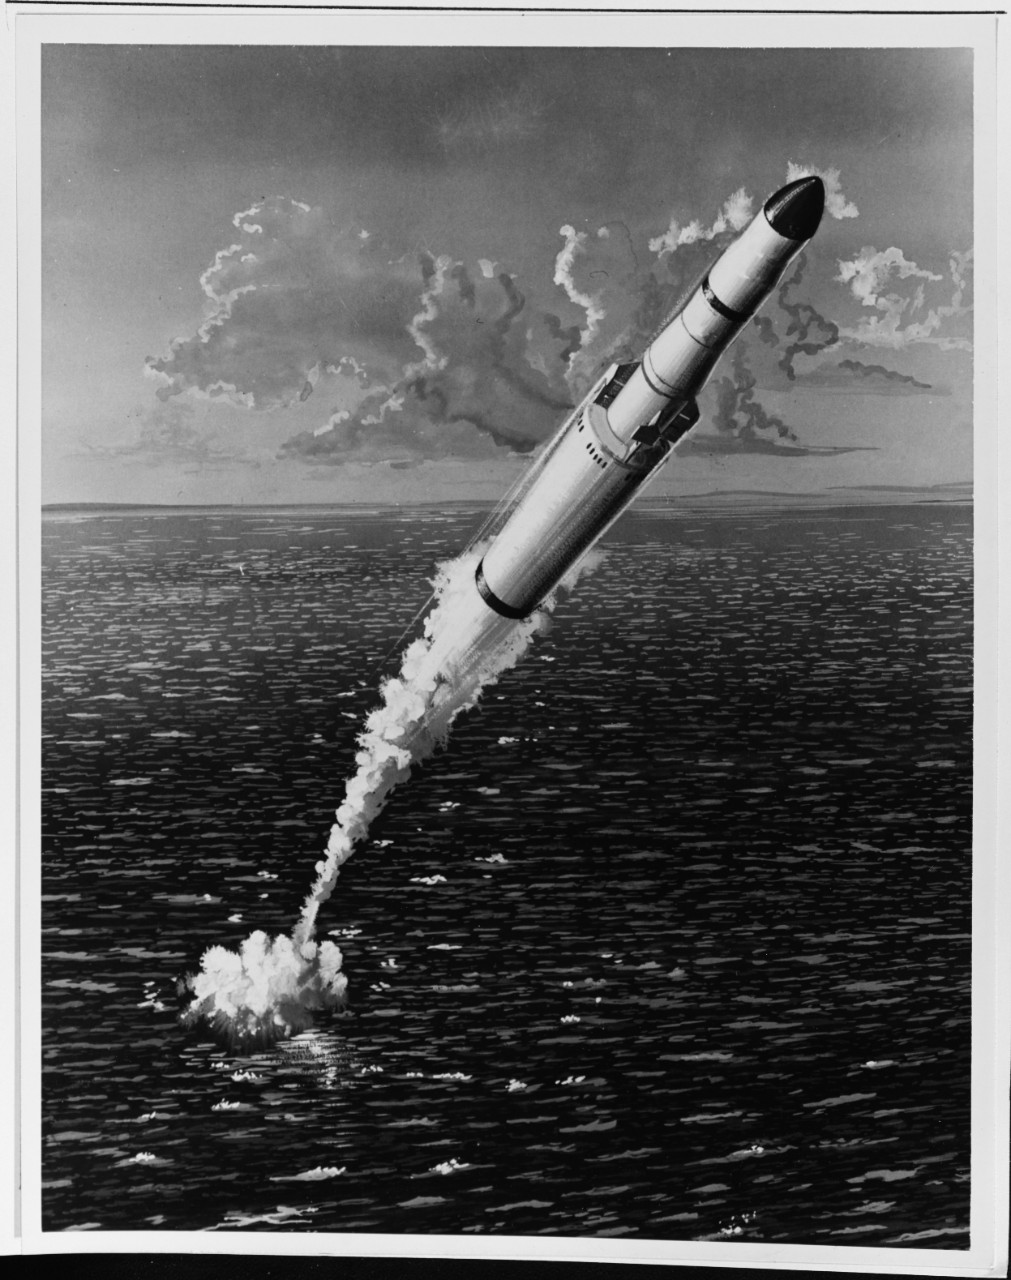 UUM-44A Subroc Missile